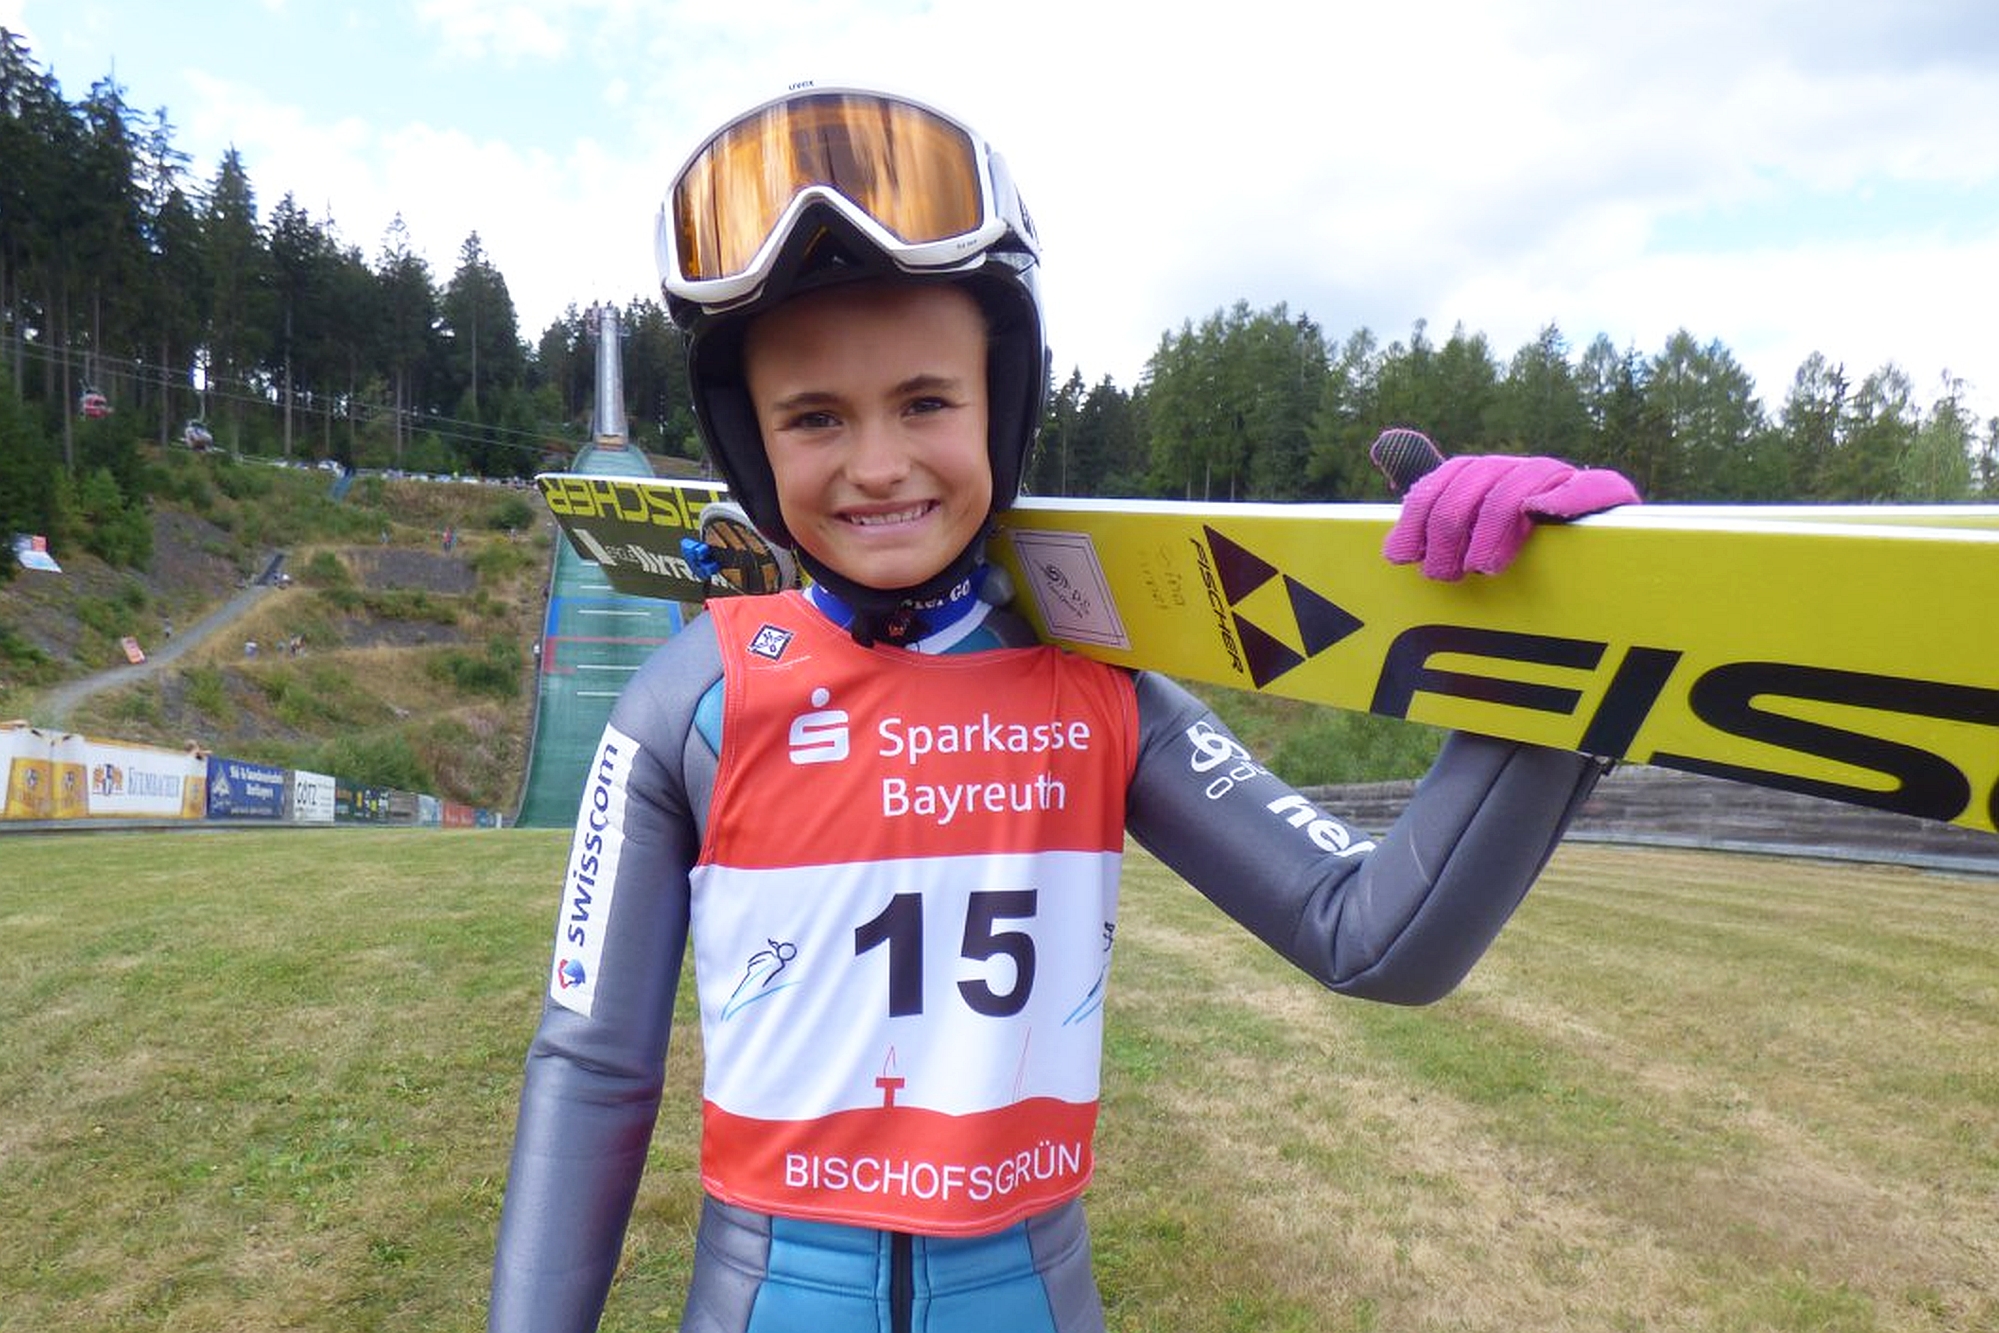 SinaArnet Bischofsgrun2018 fotKlausPurucker - FIS Cup kobiet